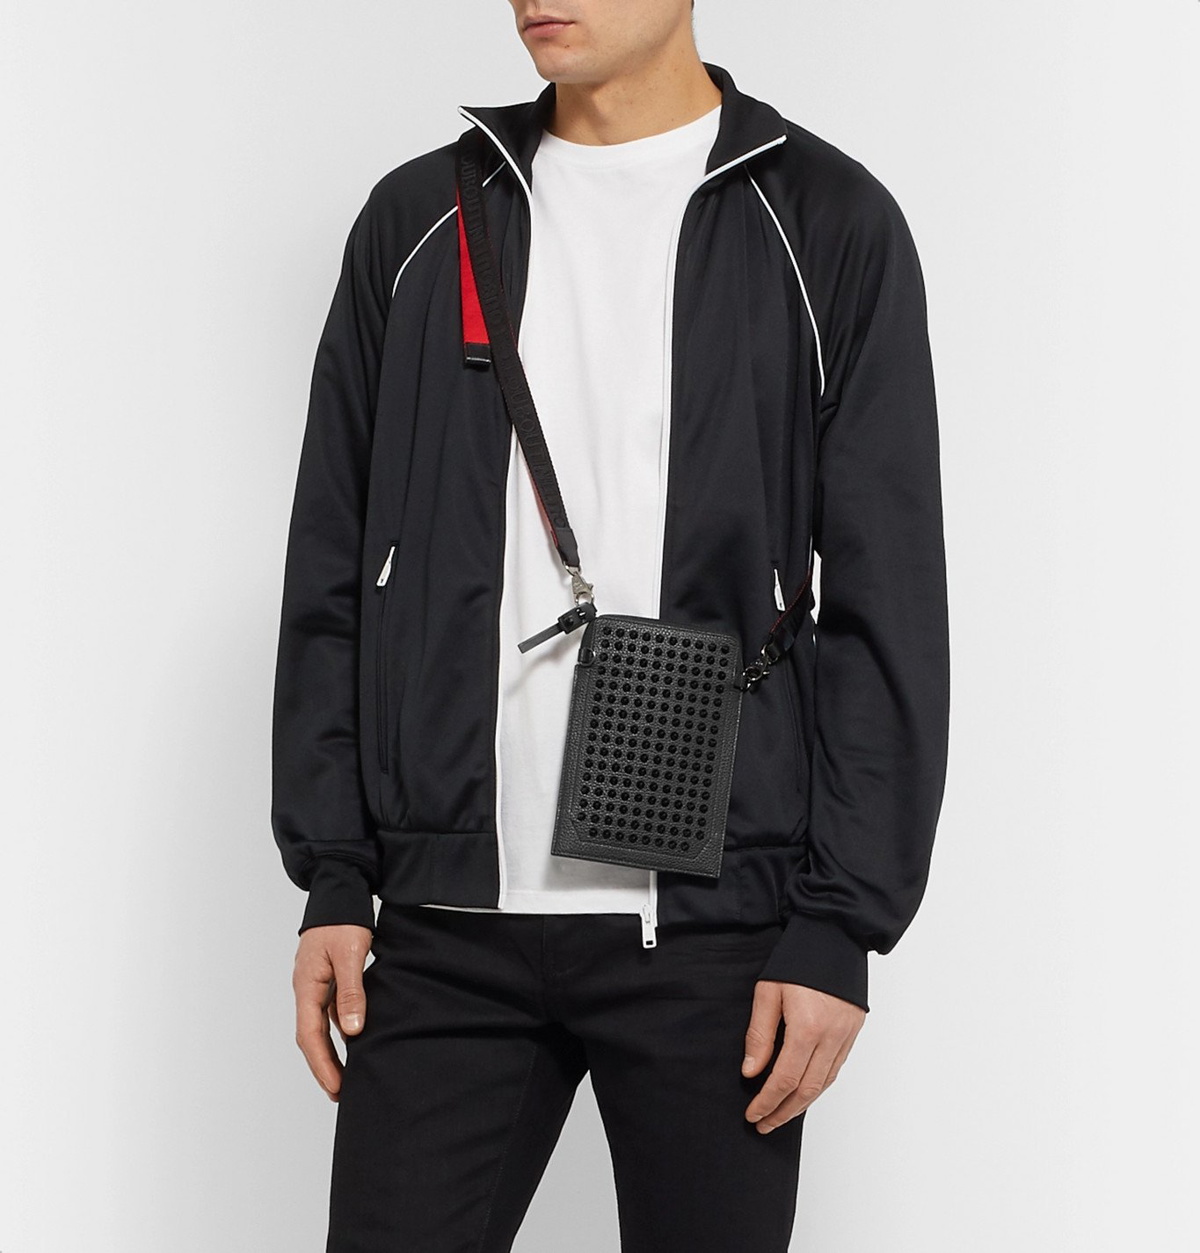 Monogram Leather Shoulder Bag in Black - Christian Louboutin